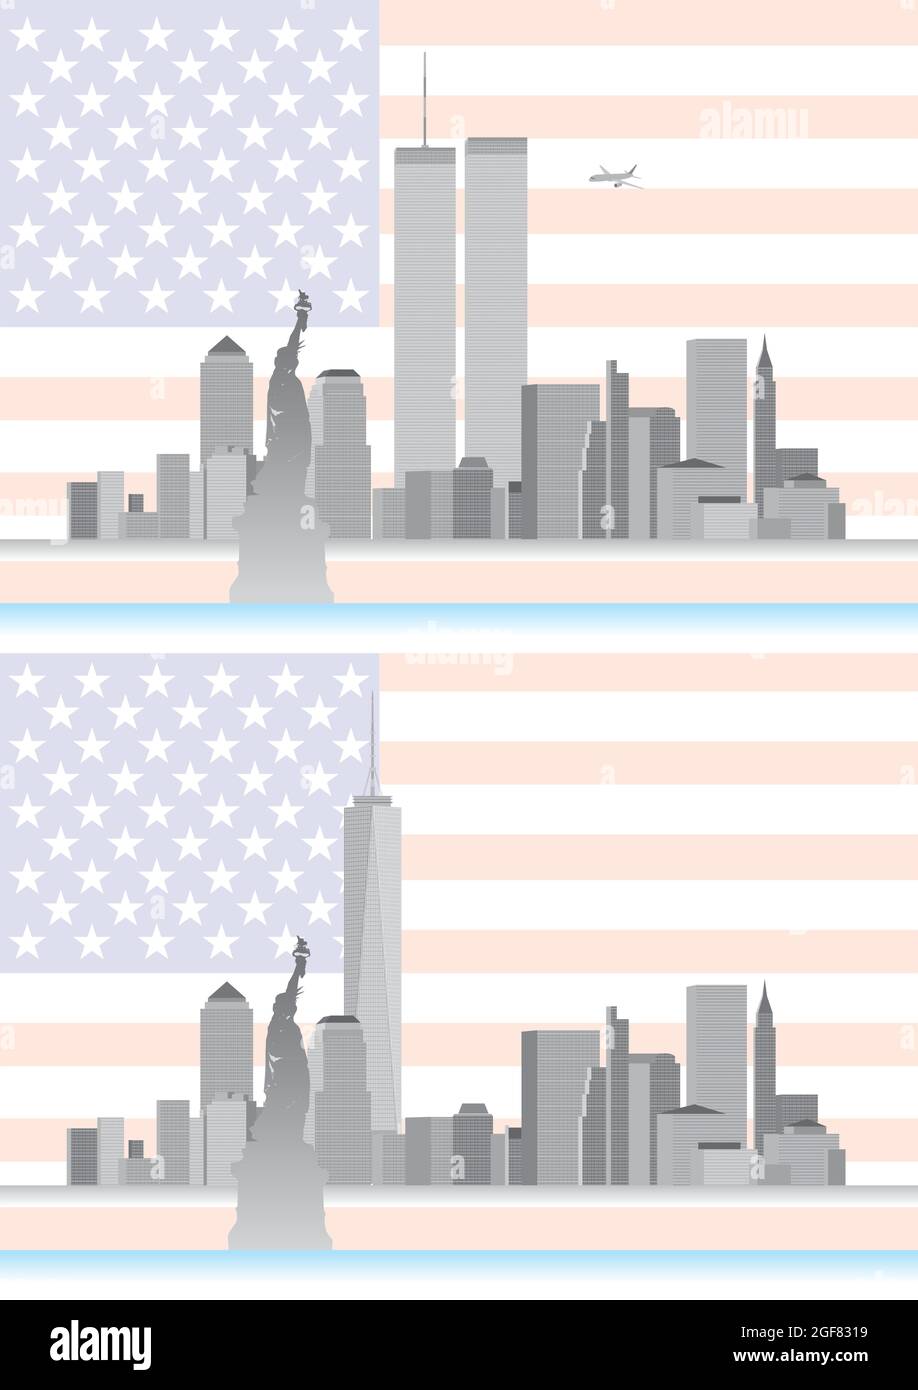 WTC, ancien et nouveau World Trade Center, New York, États-Unis d'Amérique, horizon avant et après le 9/11, illustration vectorielle Illustration de Vecteur